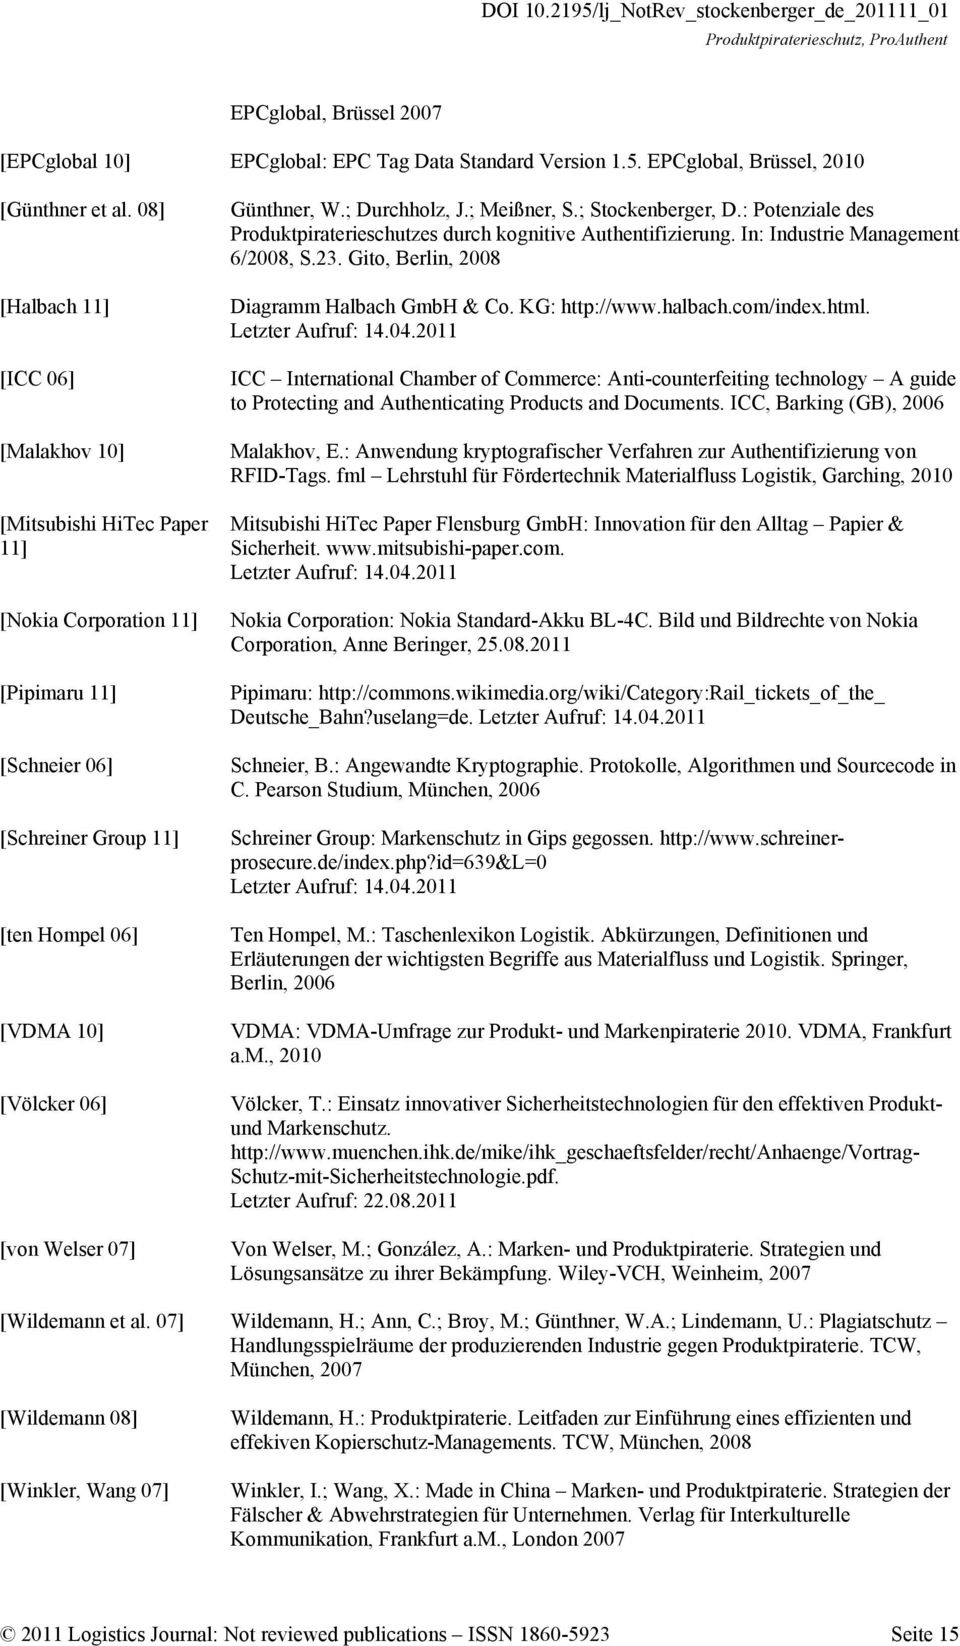 Günthner, W.; Durchholz, J.; Meißner, S.; Stockenberger, D.: Potenziale des Produktpiraterieschutzes durch kognitive Authentifizierung. In: Industrie Management 6/2008, S.23.